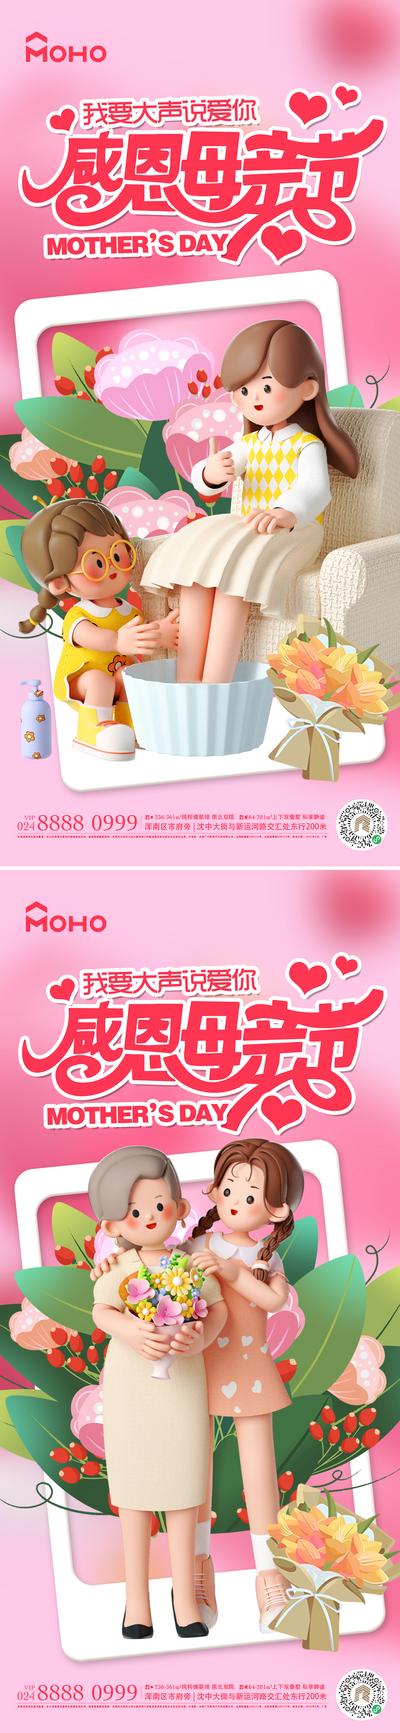 南门网 广告 海报 节日 母亲节 母亲 母女 母子 爱 母爱 感恩 拥抱 呵护 陪伴 鲜花 送花 花 系列